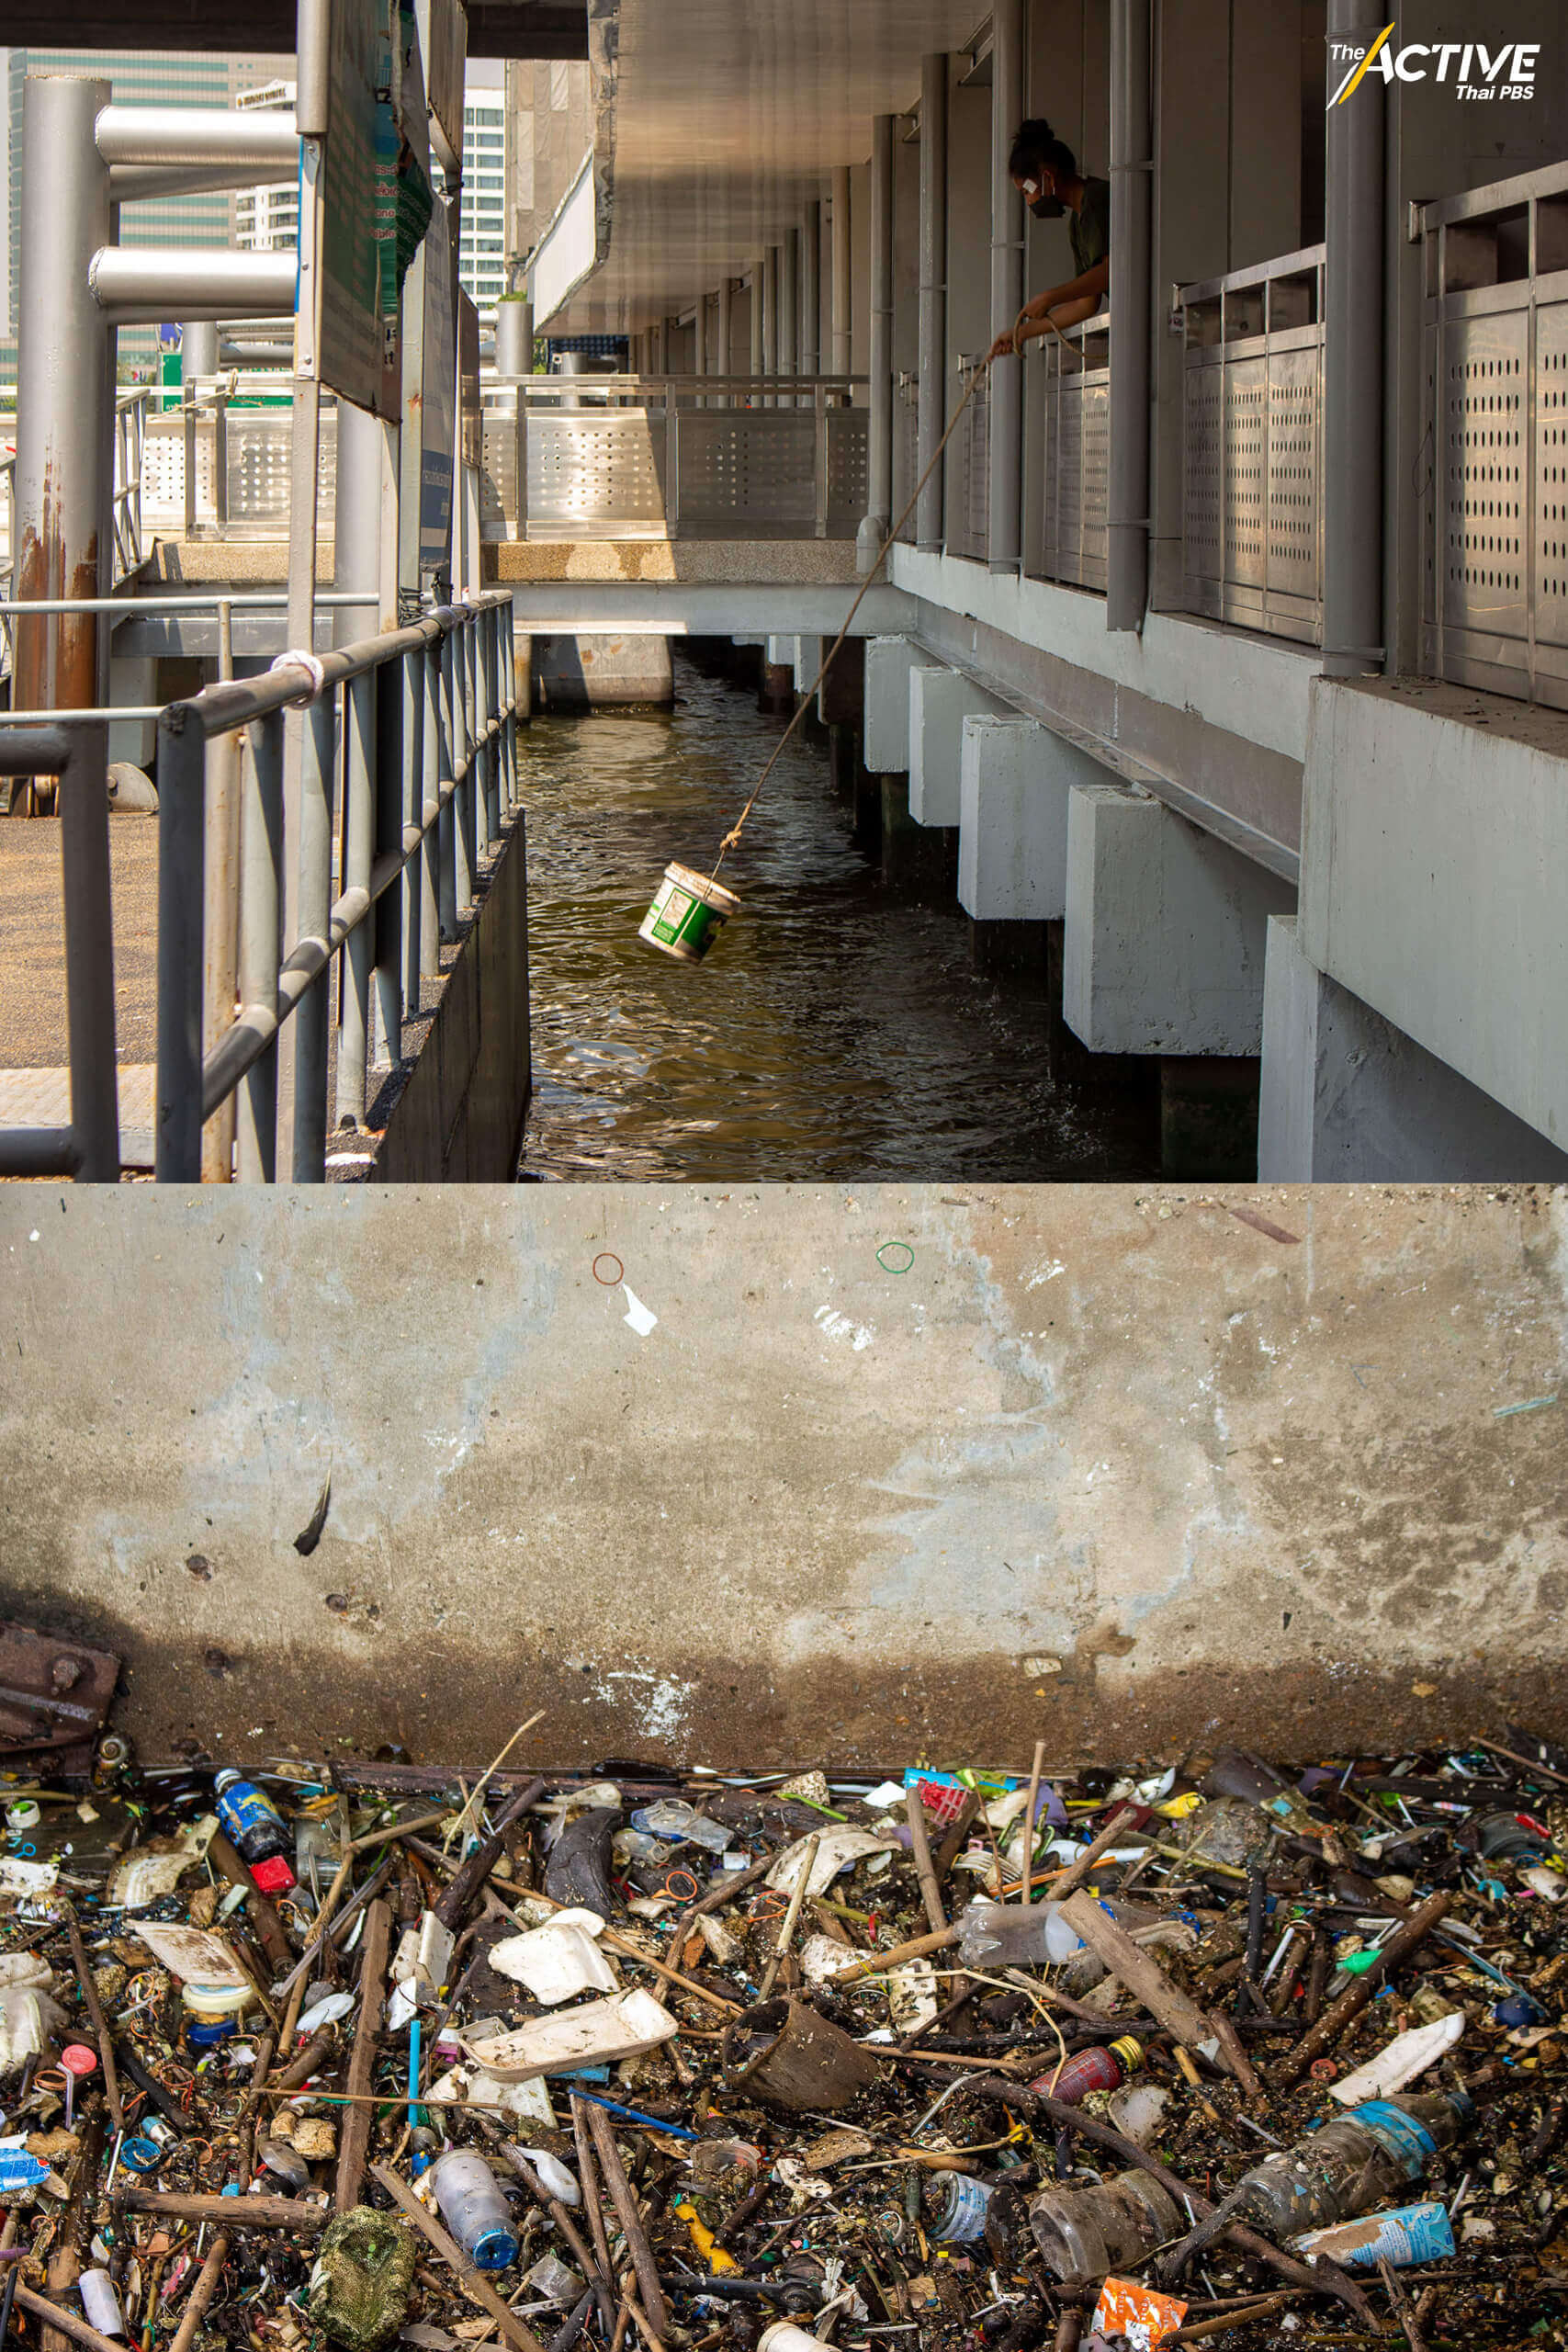 ปัญหาคลองตื้นเขินจากขยะยังเป็นอุปสรรคในการสัญจรทางน้ำ ทำให้คนกรุงฯ ไม่อาจดึงศักยภาพของคลองและแม่น้ำได้อย่างเต็มที่